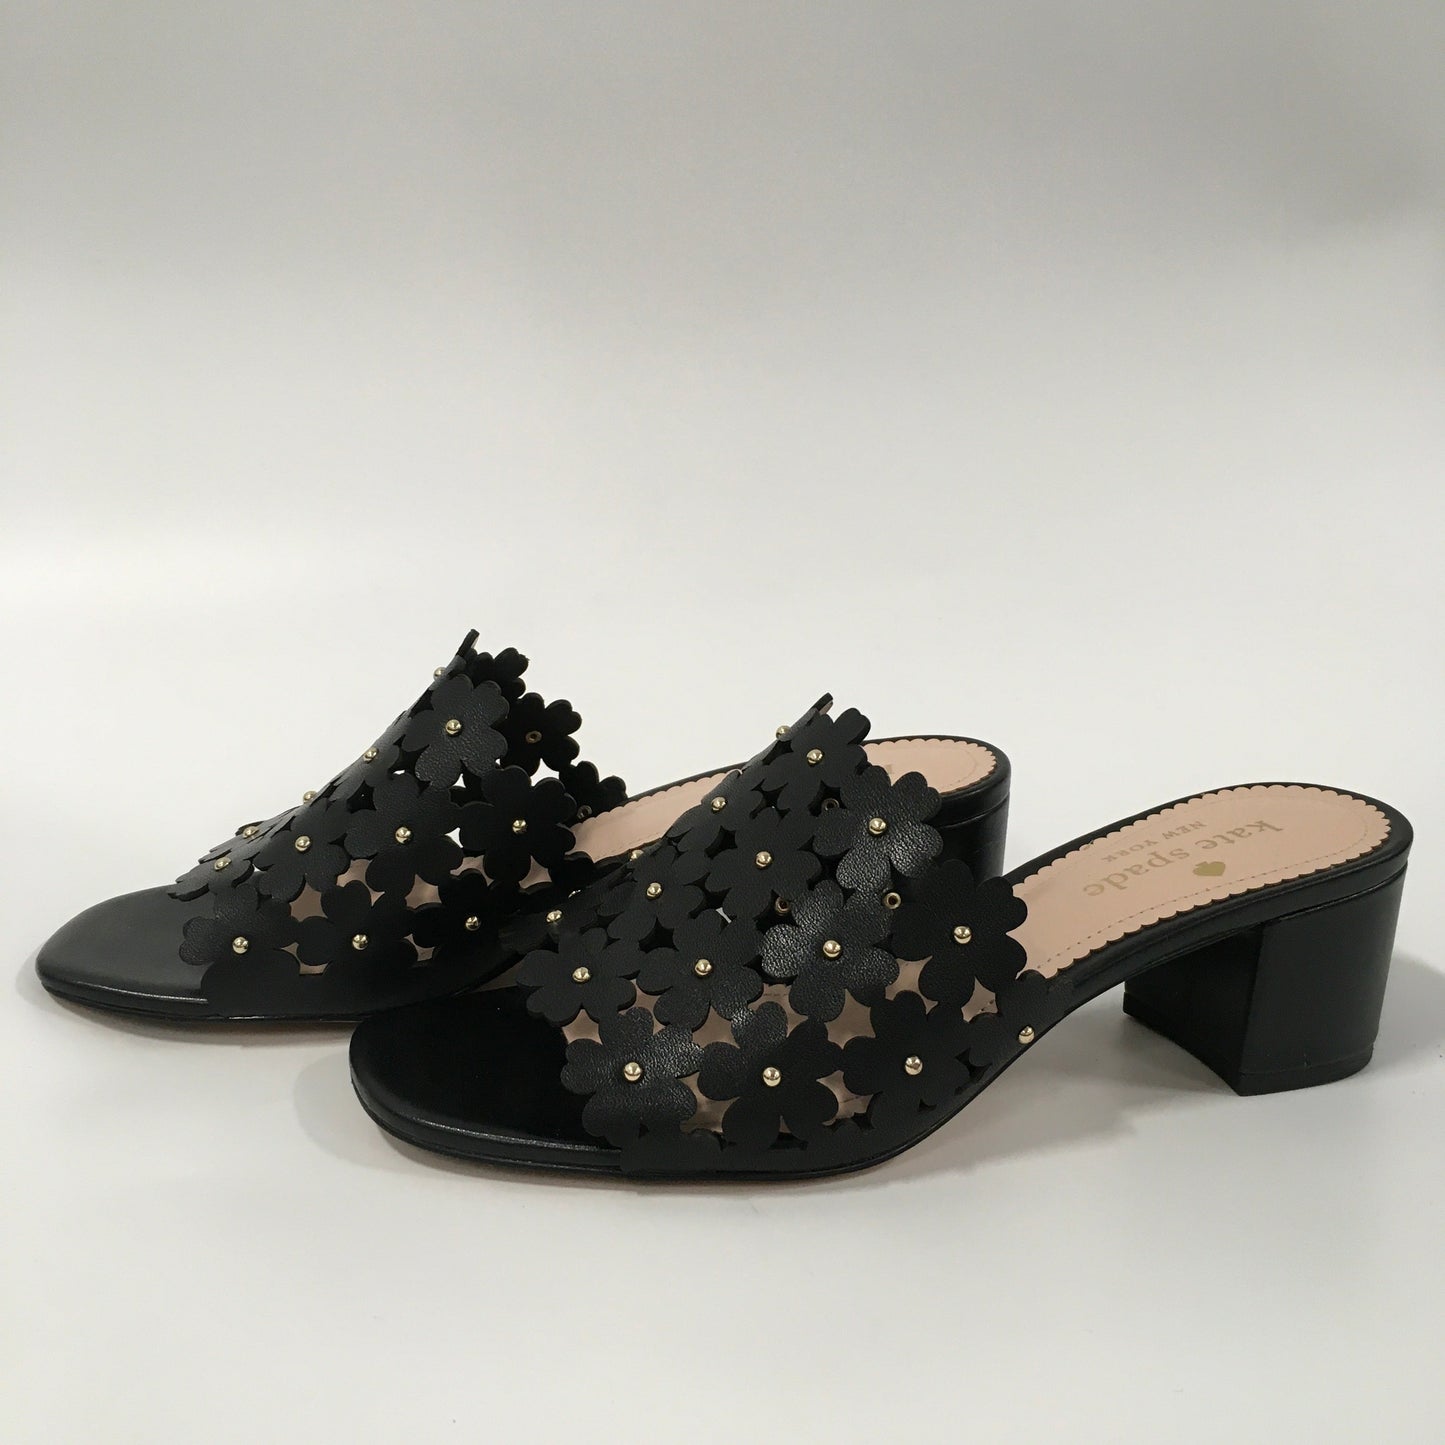 Shoes Heels Kitten By Kate Spade  Size: 6